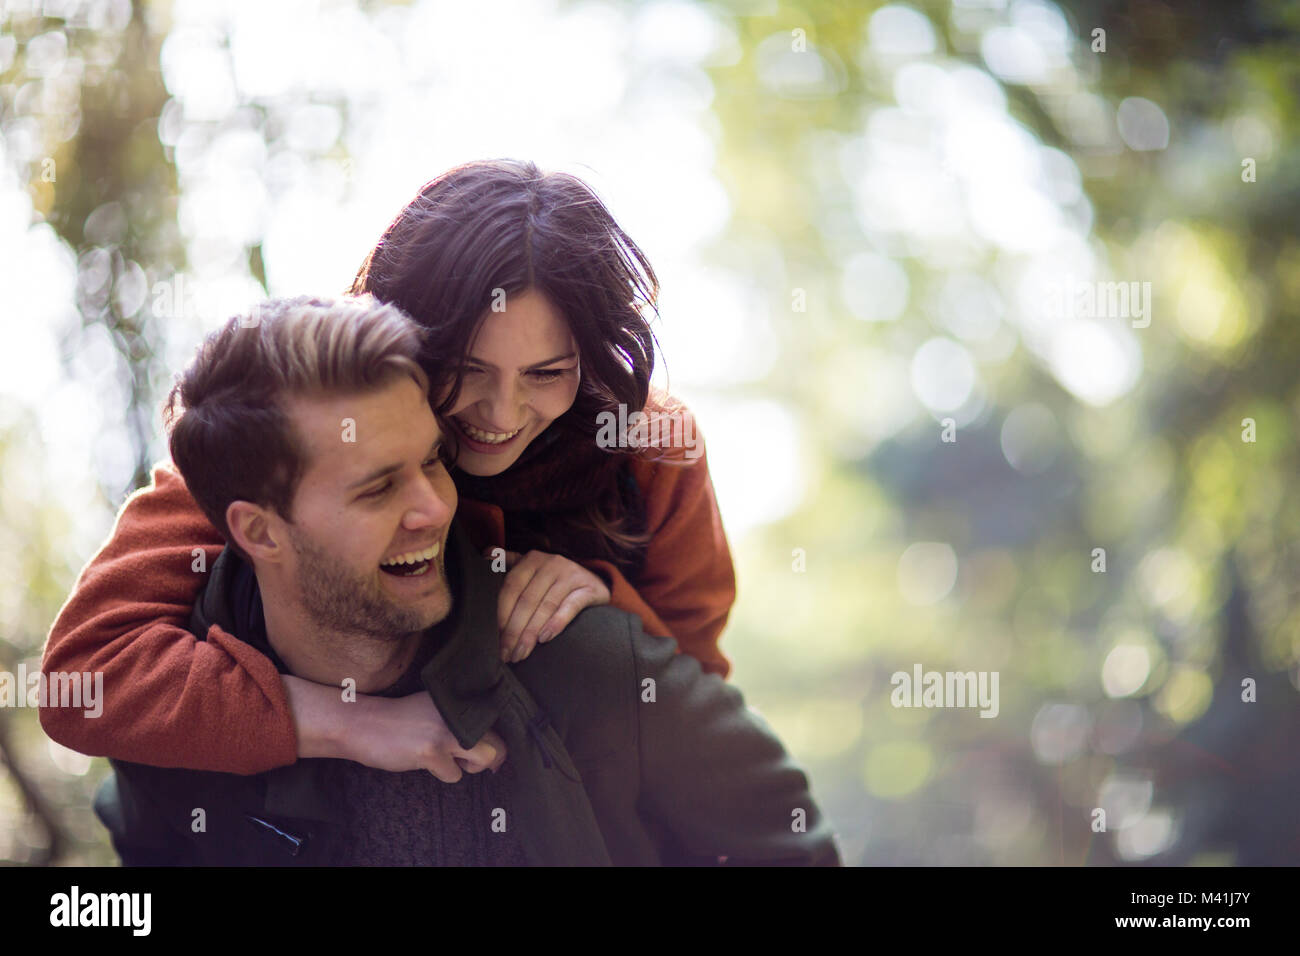 Couple having fun outdoors in autumn Stock Photo